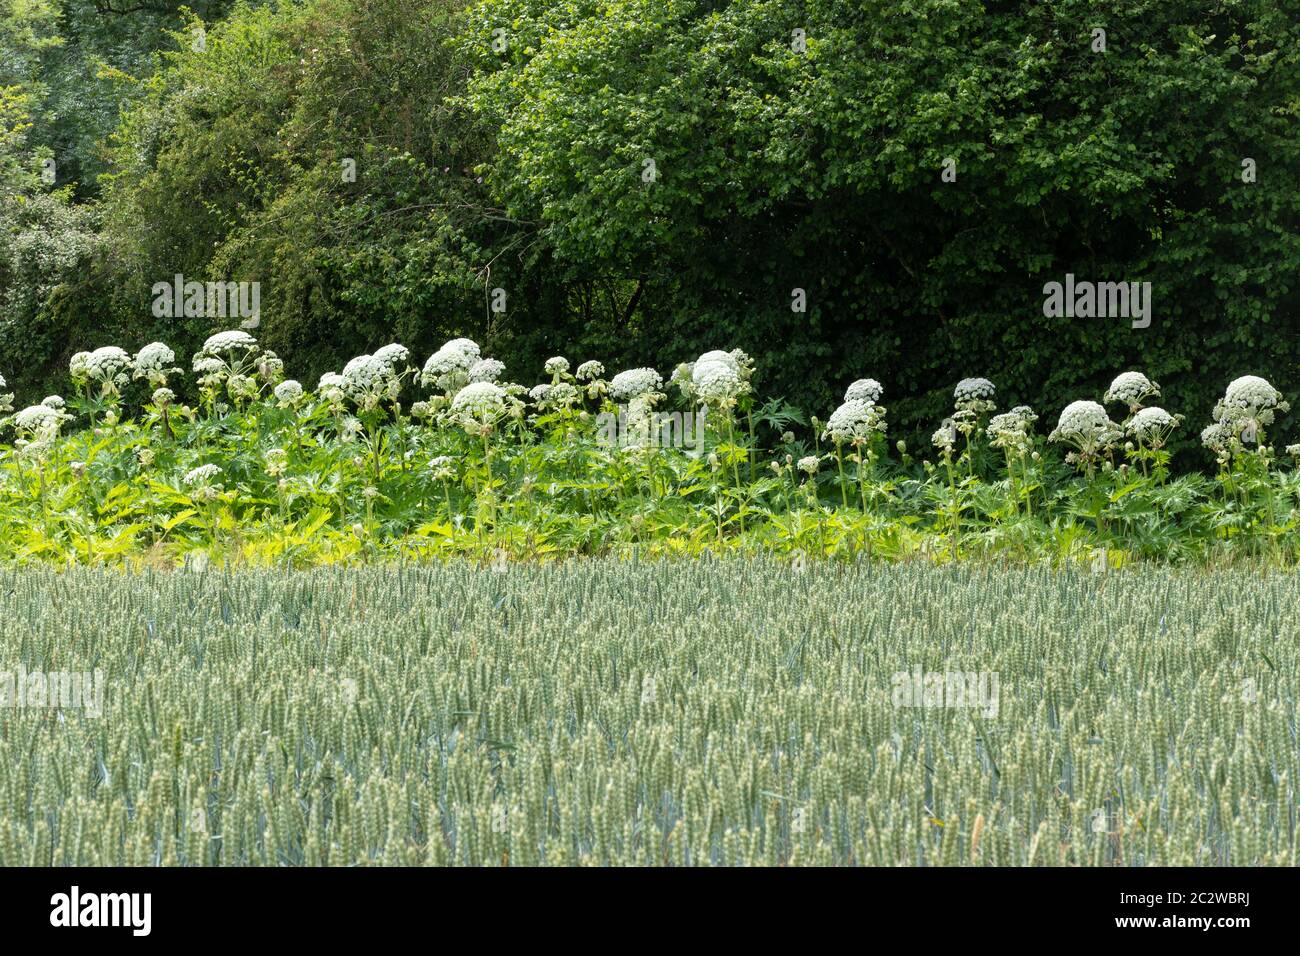 L'heracleum mantegazzianum, une grande plante à fleurs envahissantes au Royaume-Uni, pousse le long d'une bordure de champ Banque D'Images